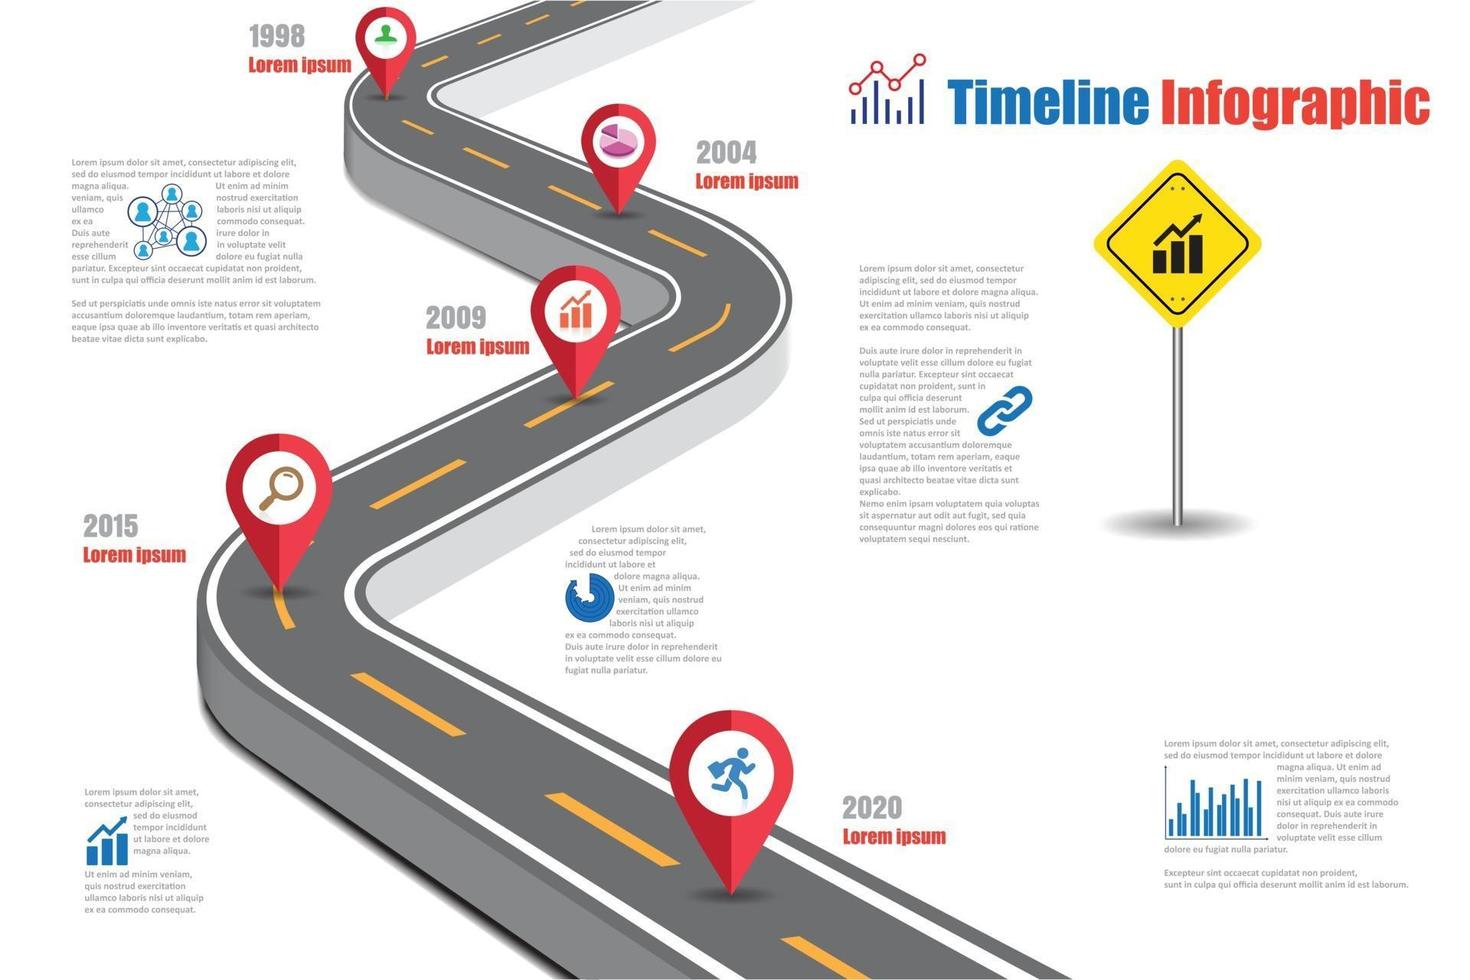 Business Road Signs Map Timeline Infografik für abstrakten Hintergrund. Vorlage Meilenstein Element moderne Diagramm Prozesstechnologie digitale Marketingdaten Präsentationstabelle vektor